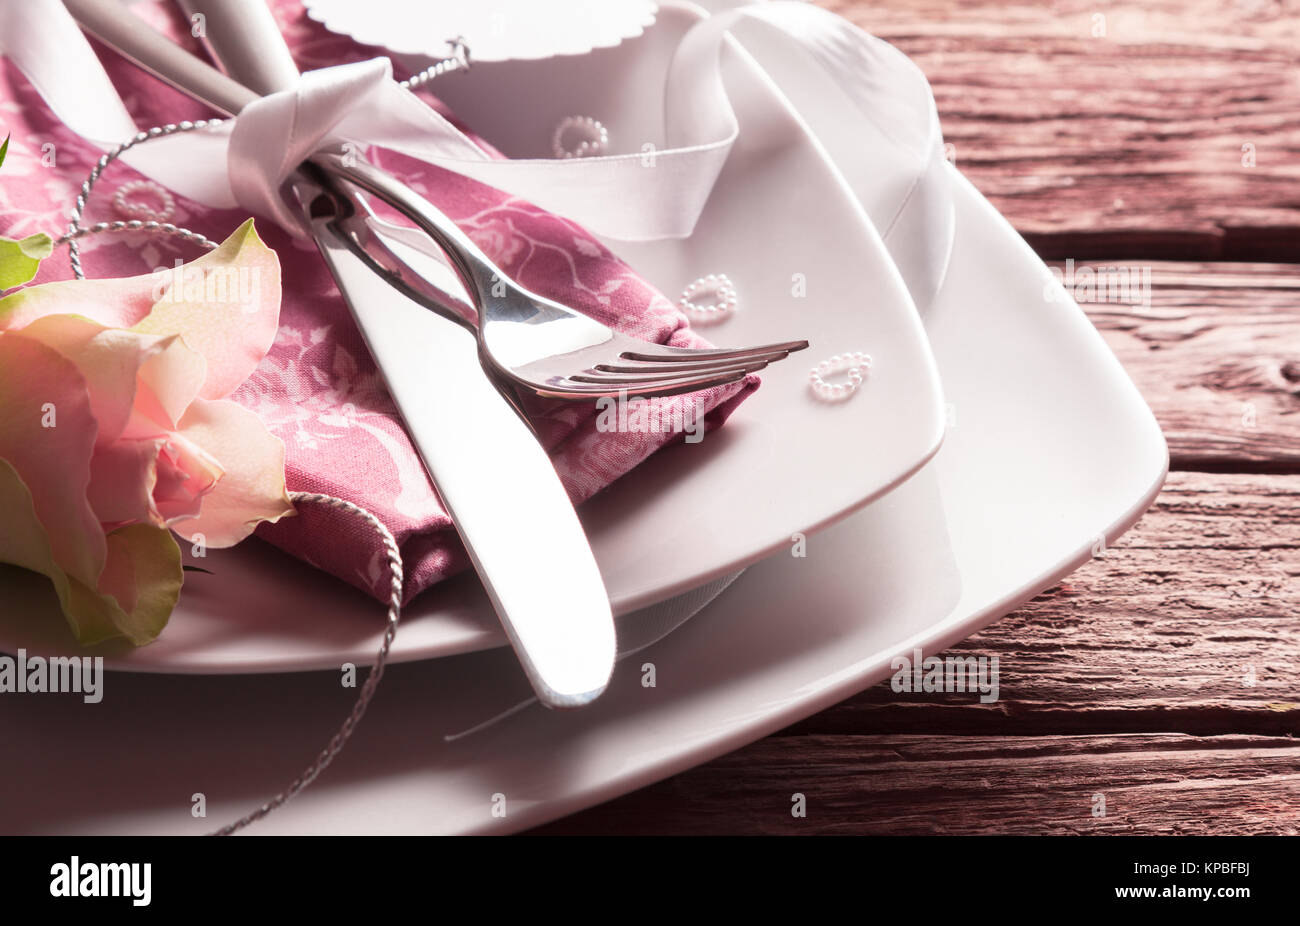 Nahaufnahme von romantische Hochzeit oder zum Muttertag Ort Einstellung - Messer und Gabel gebunden mit weißem Band auf Rosa Serviette auf Weiße Platten mit rosa Rose und winzige Perle Herz auf rustikalen Holztisch Stockfoto